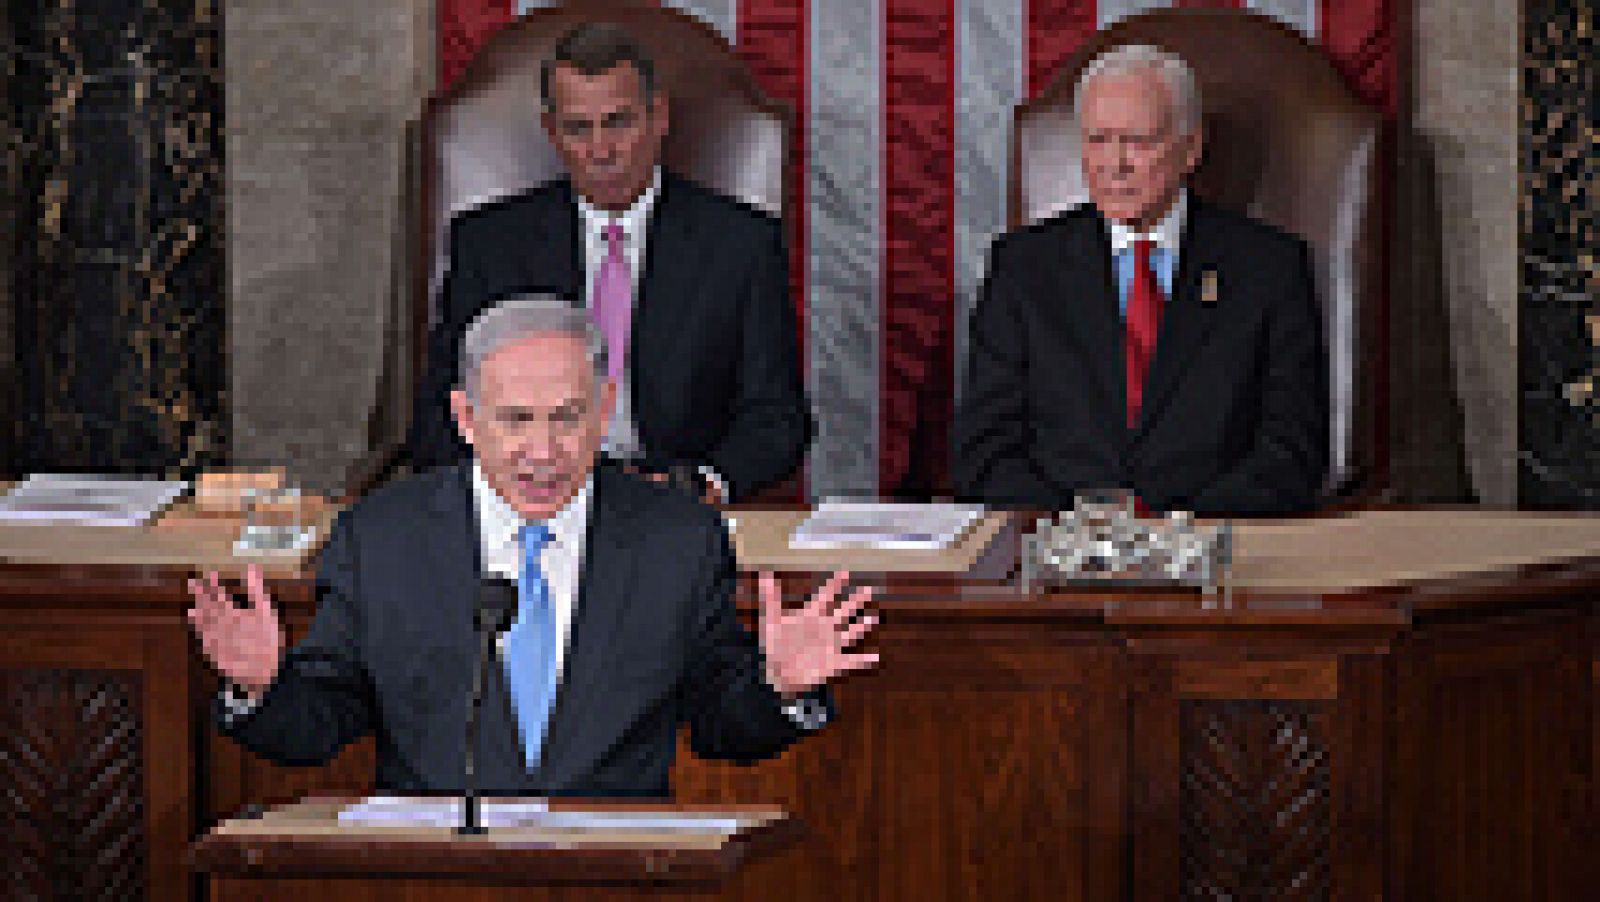 El primer ministro israelí, Benjamin Netanyahu, ha asegurado en un discurso ante el Congreso de EE.UU. que la búsqueda de Irán de armas nucleares es ¿una amenaza para la supervivencia de Israel¿ y para "el mundo entero" y un acuerdo nuclear con el régimen iraní no evitará que consiga la bomba. El discurso de Netanyahu, el tercero que realiza como primer ministro israelí ante el pleno del Congreso, ha generado una gran polémica en EE.UU. ya que fue invitado directamente por el presidente de la Cámara de Representantes, sin tener en cuenta a la Casa Blanca, algo que ha provocado notables fricciones con la Administración del presidente Obama